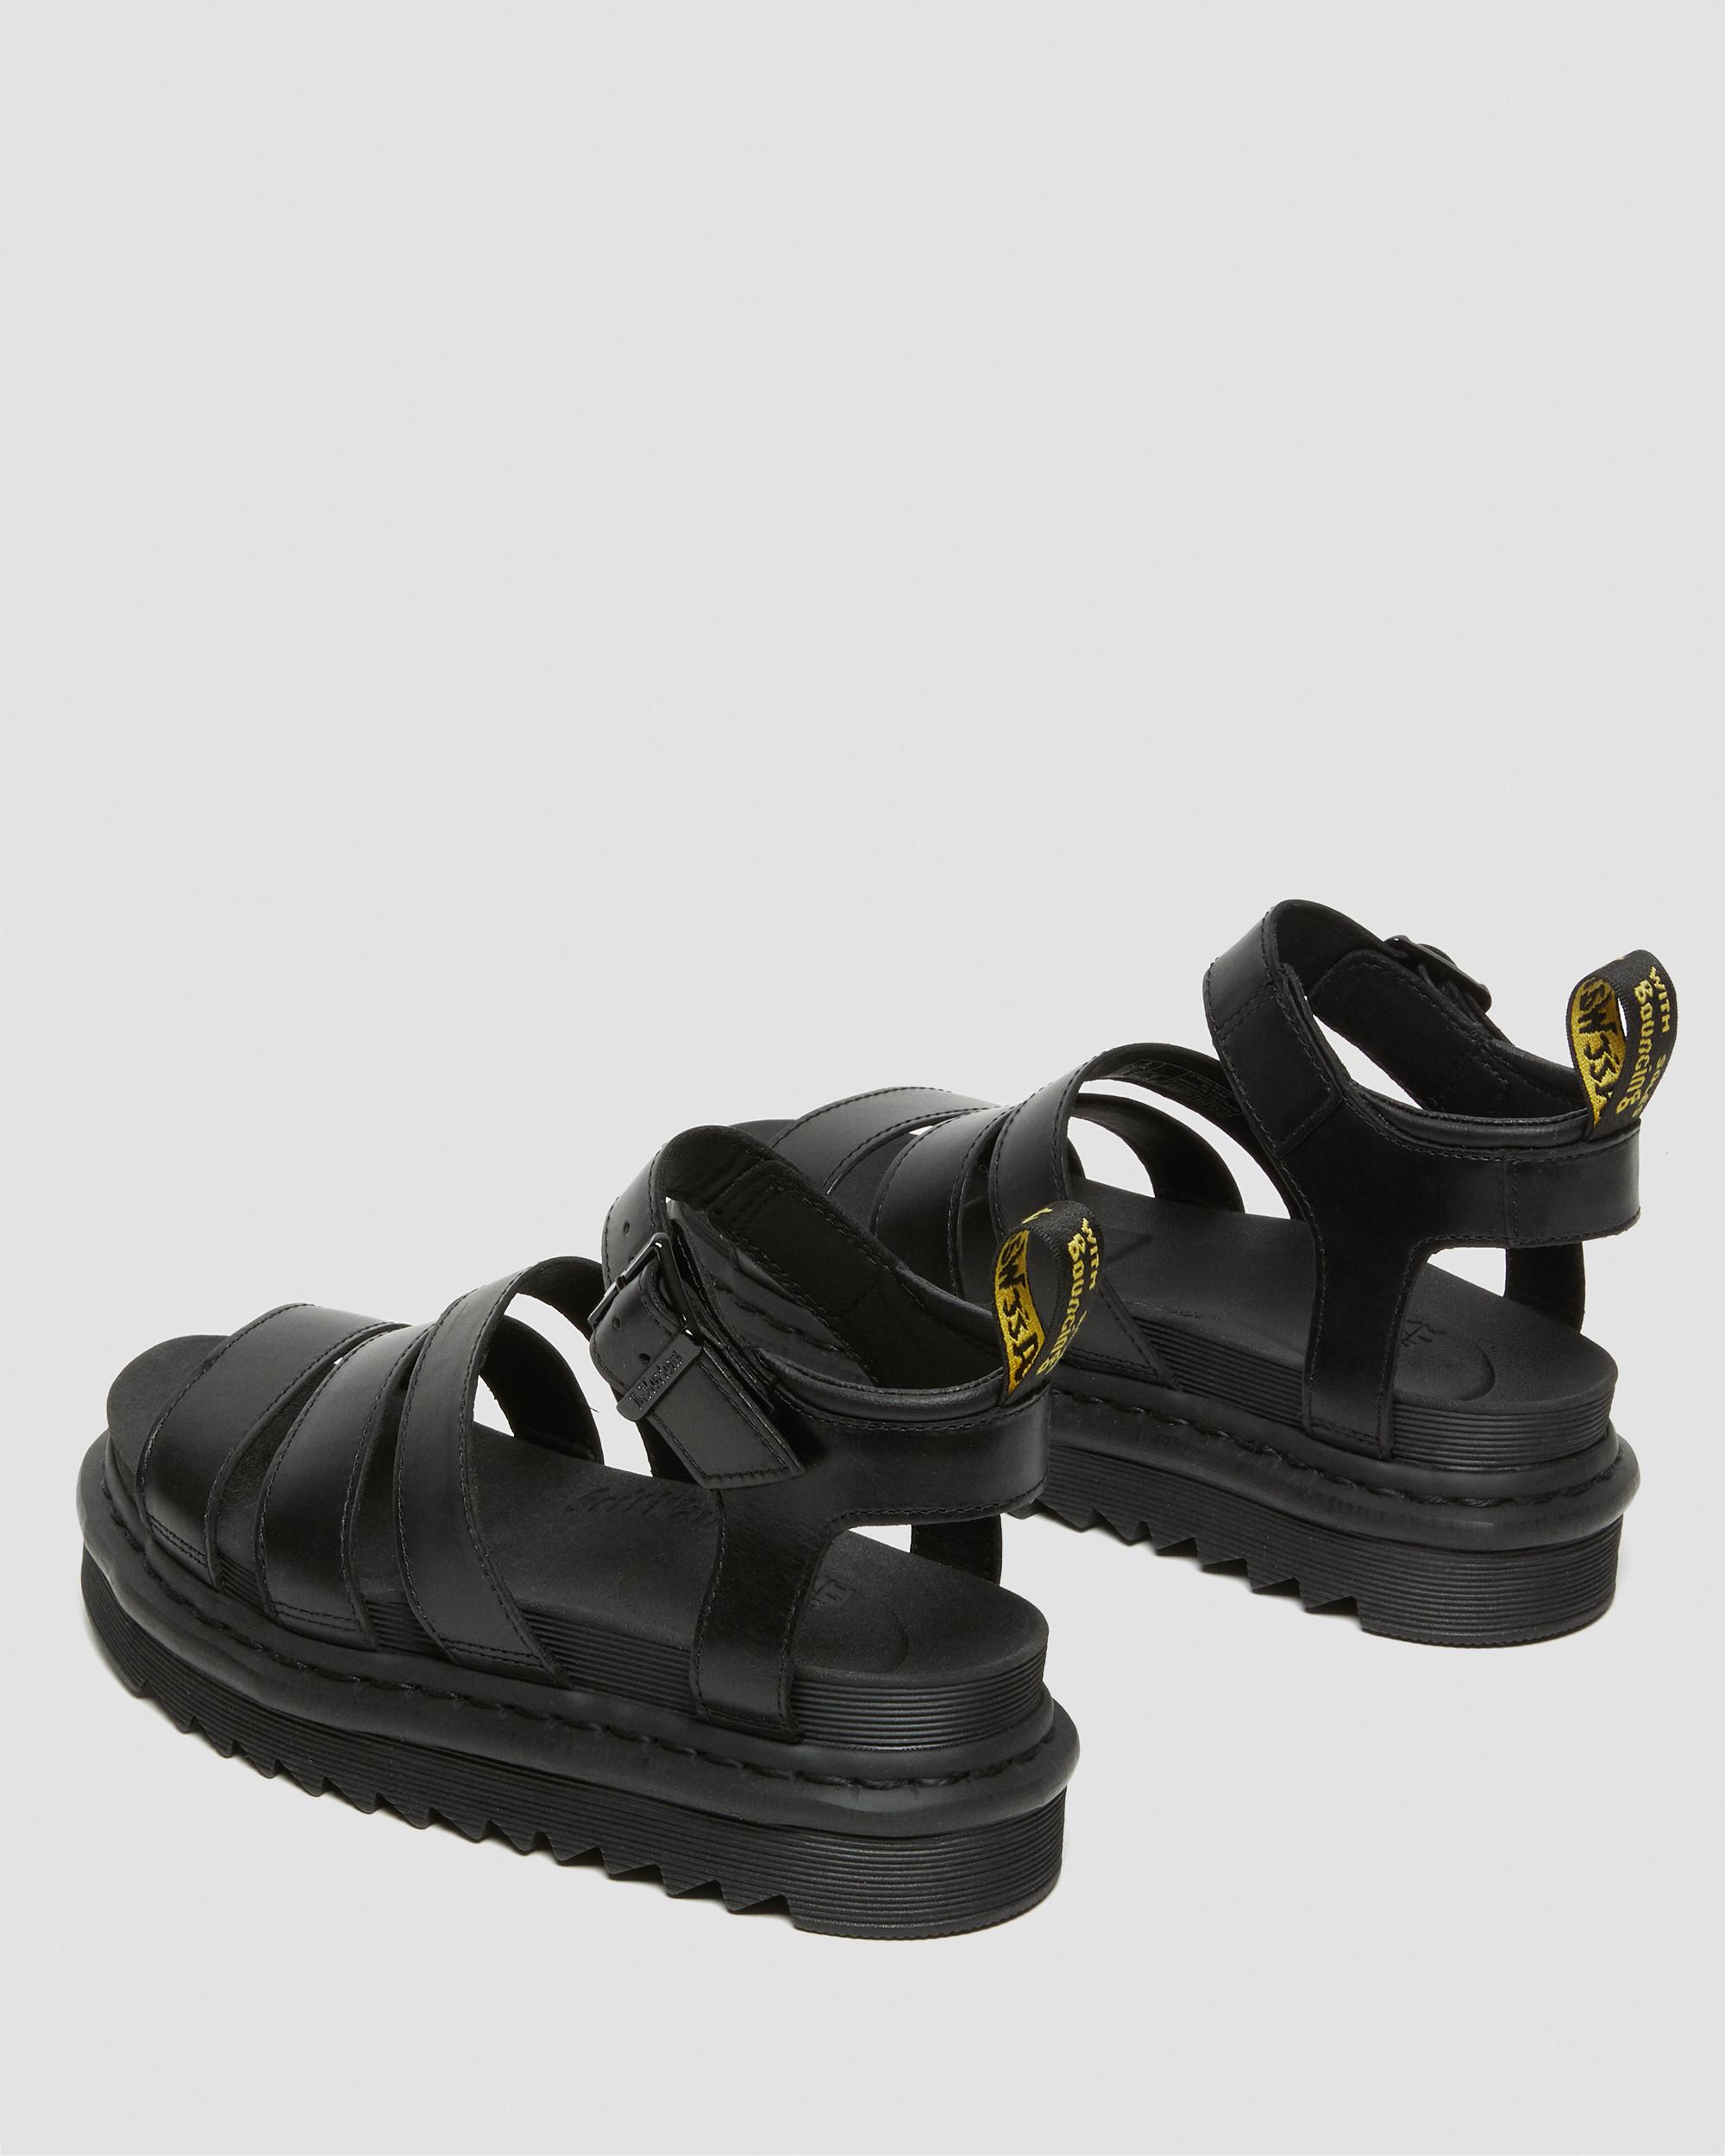 doc marten blaire sandals size 6